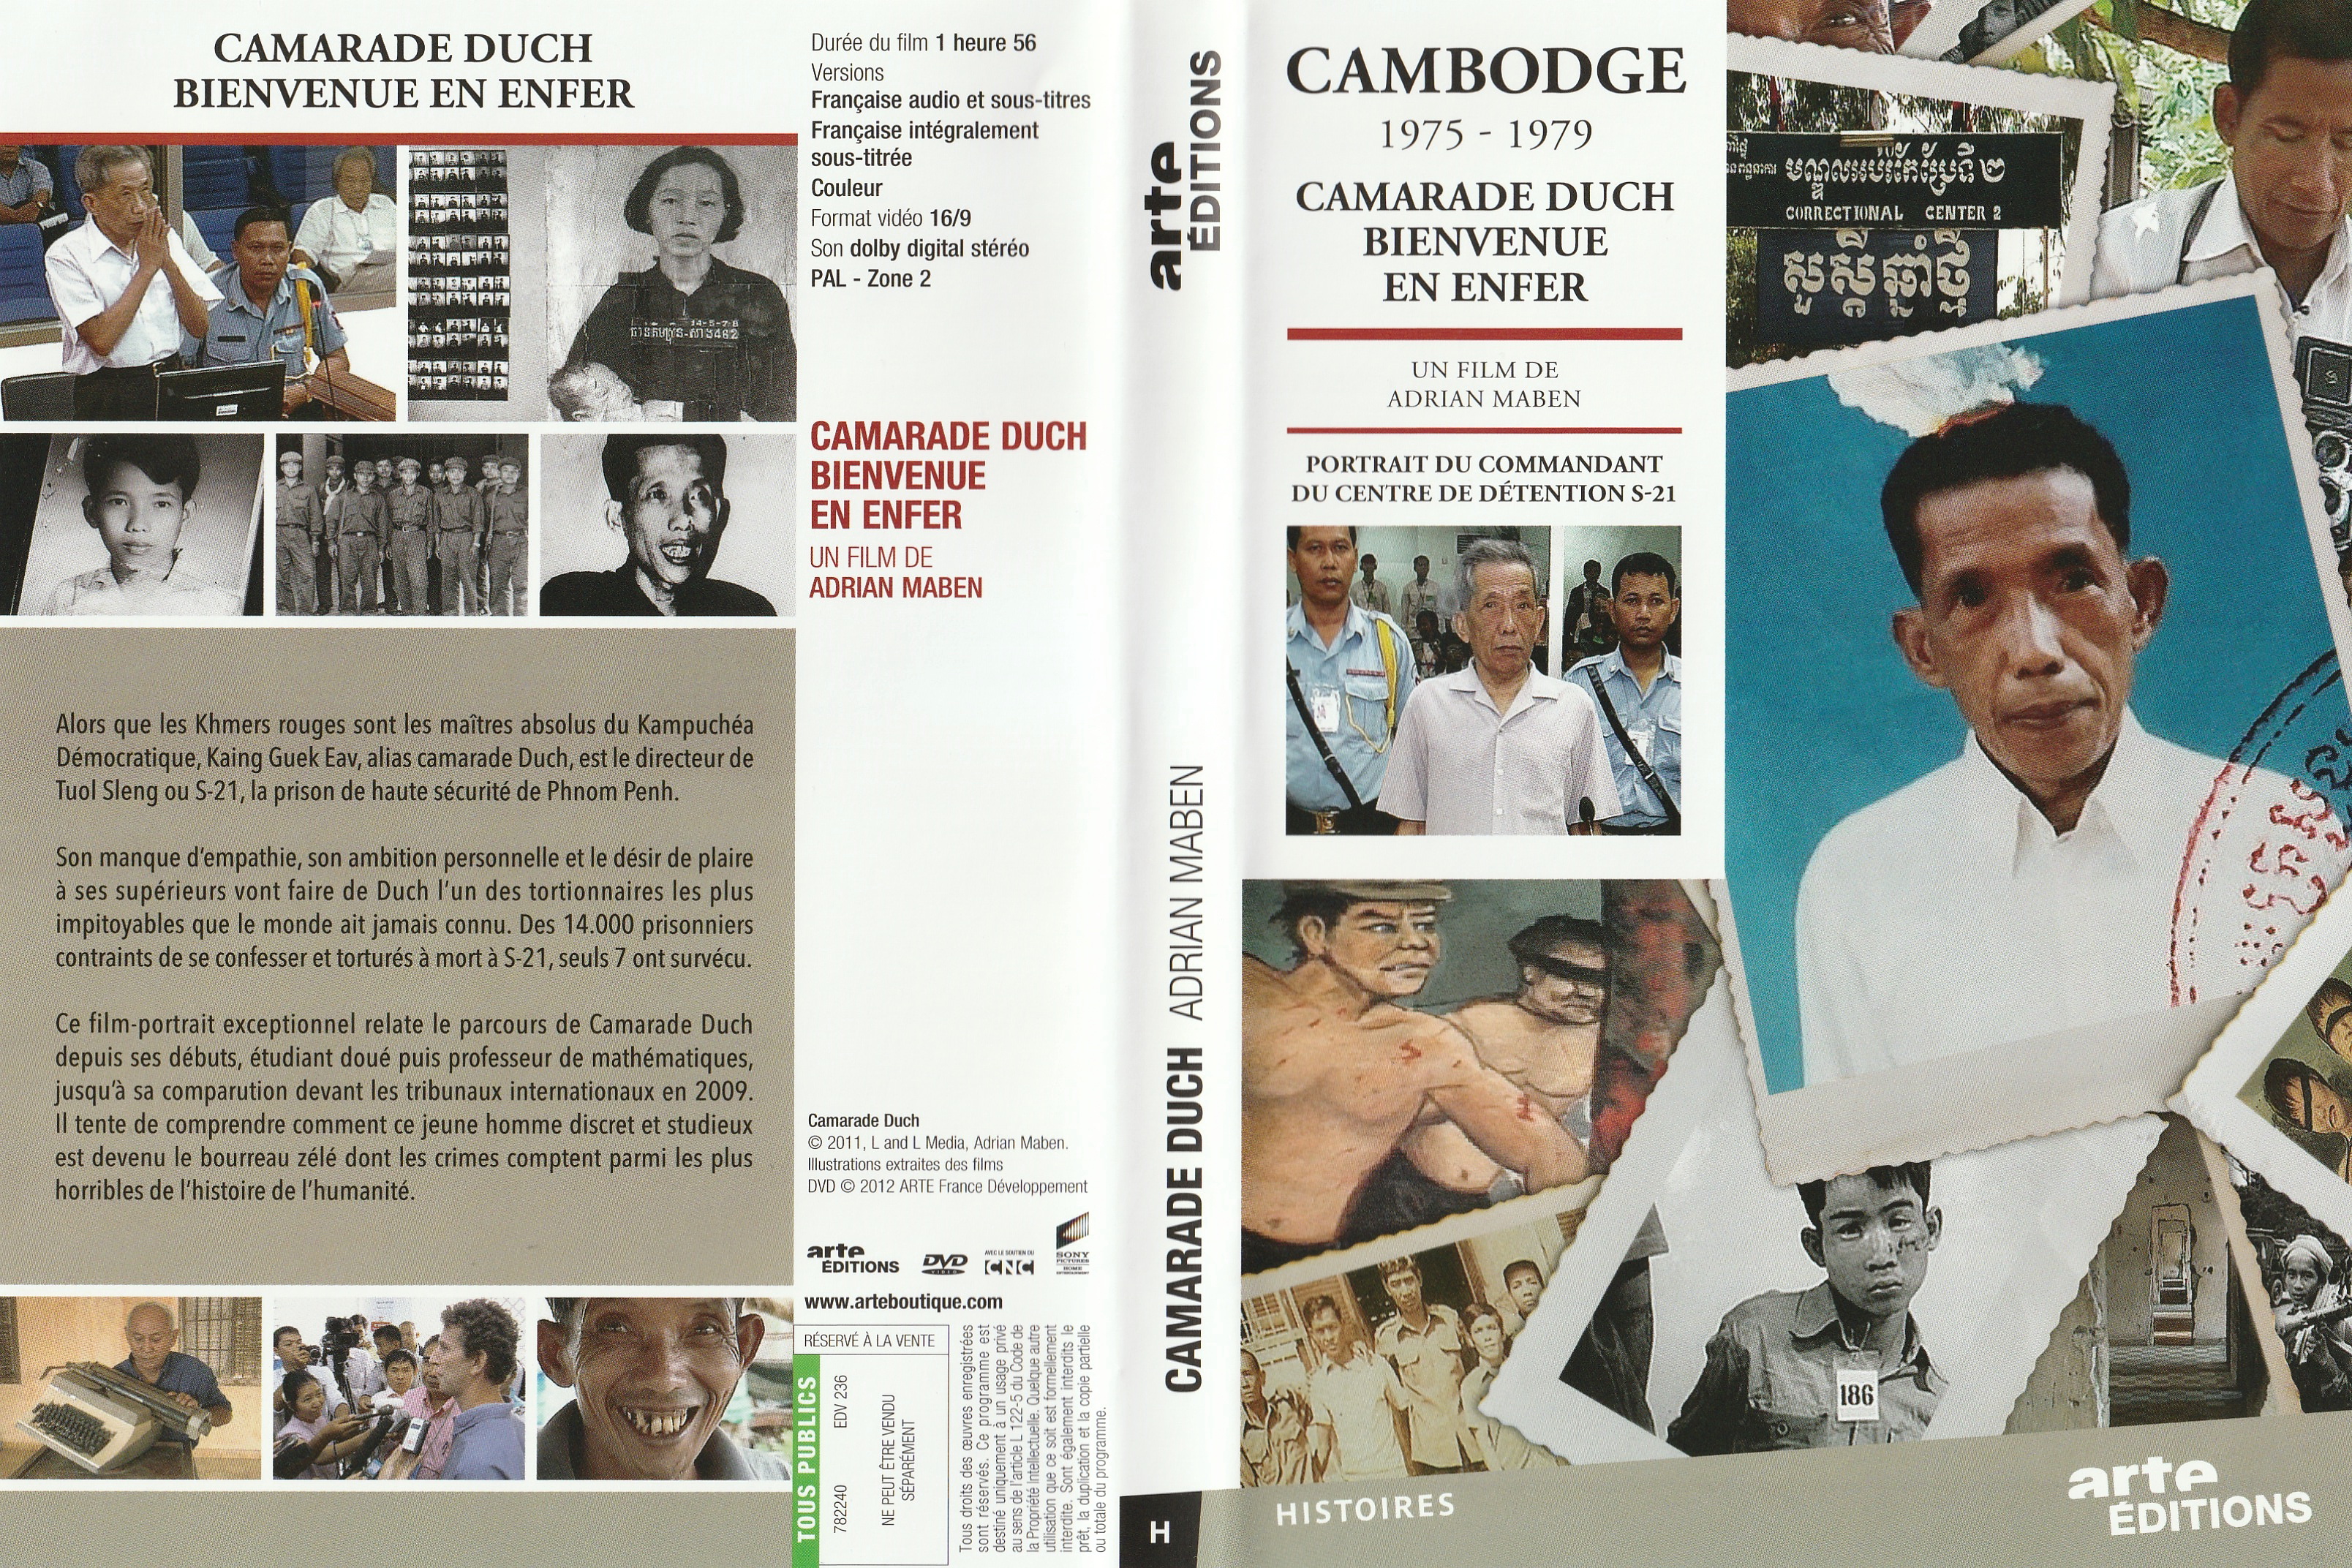 Jaquette DVD Cambodge 1975-1979 - Camarade Duch Bienvenue en enfer